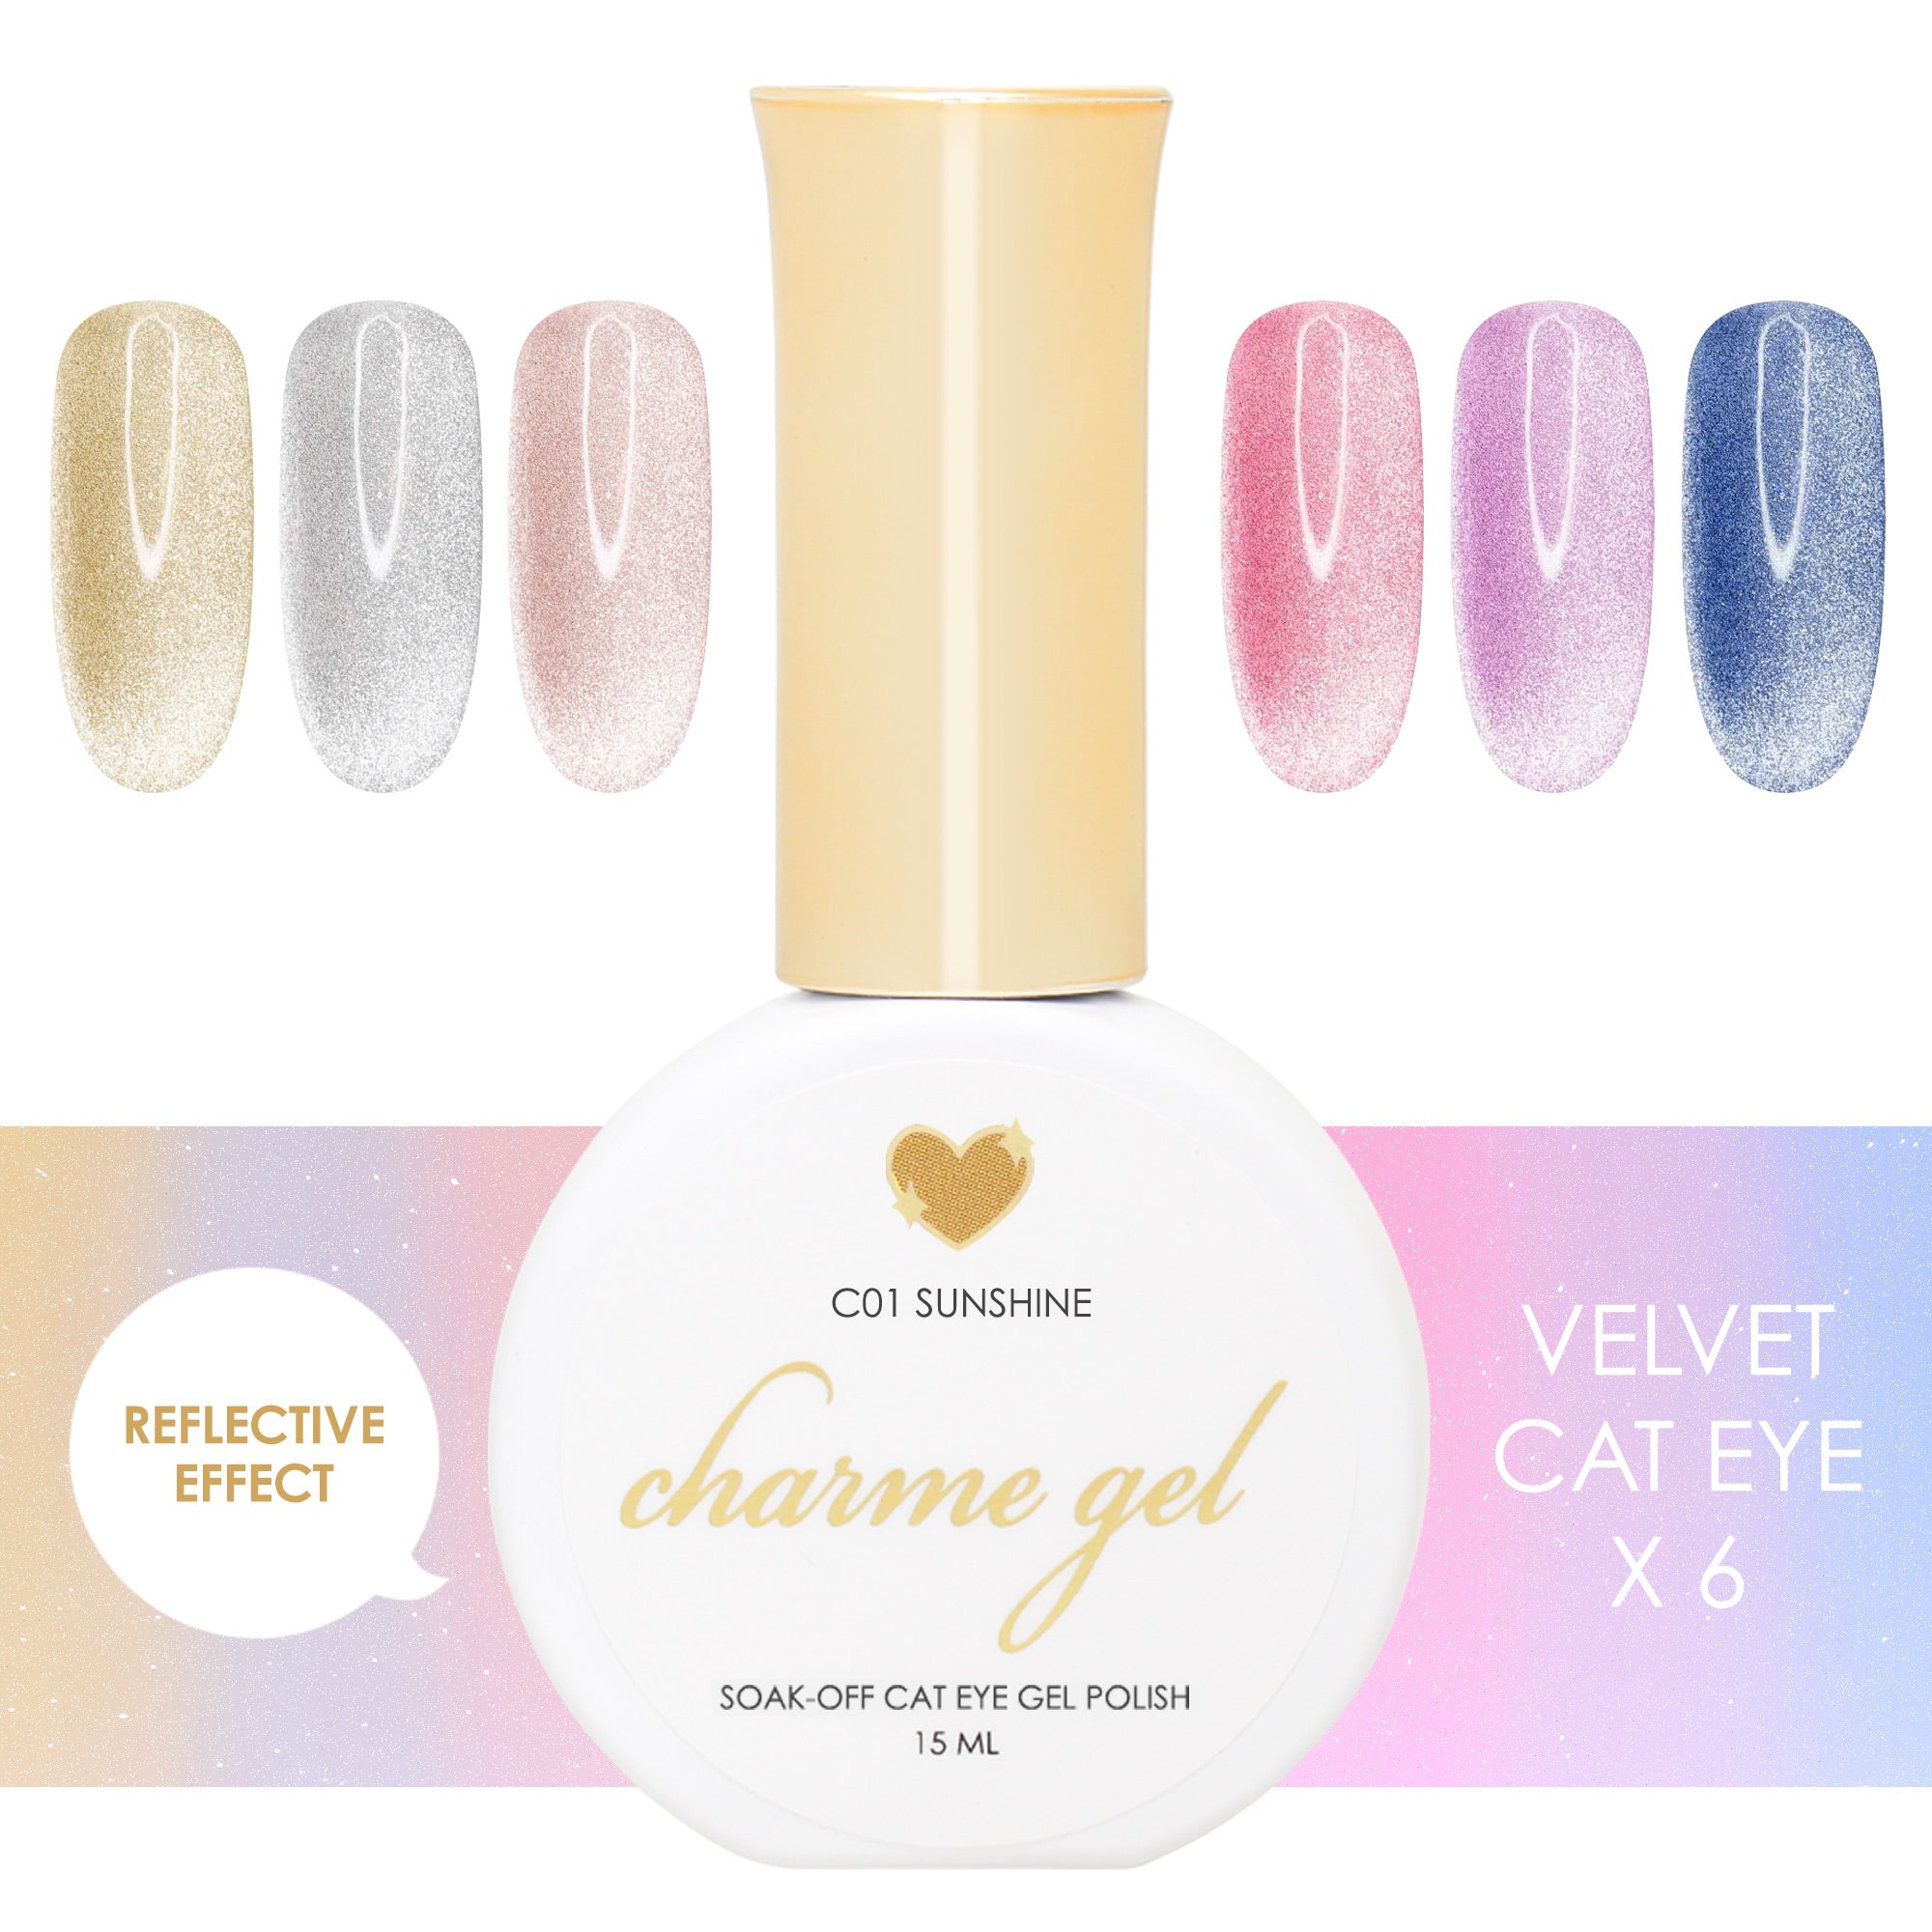 Charme Gel Velvet Cat Eye Collection / 6 Colors